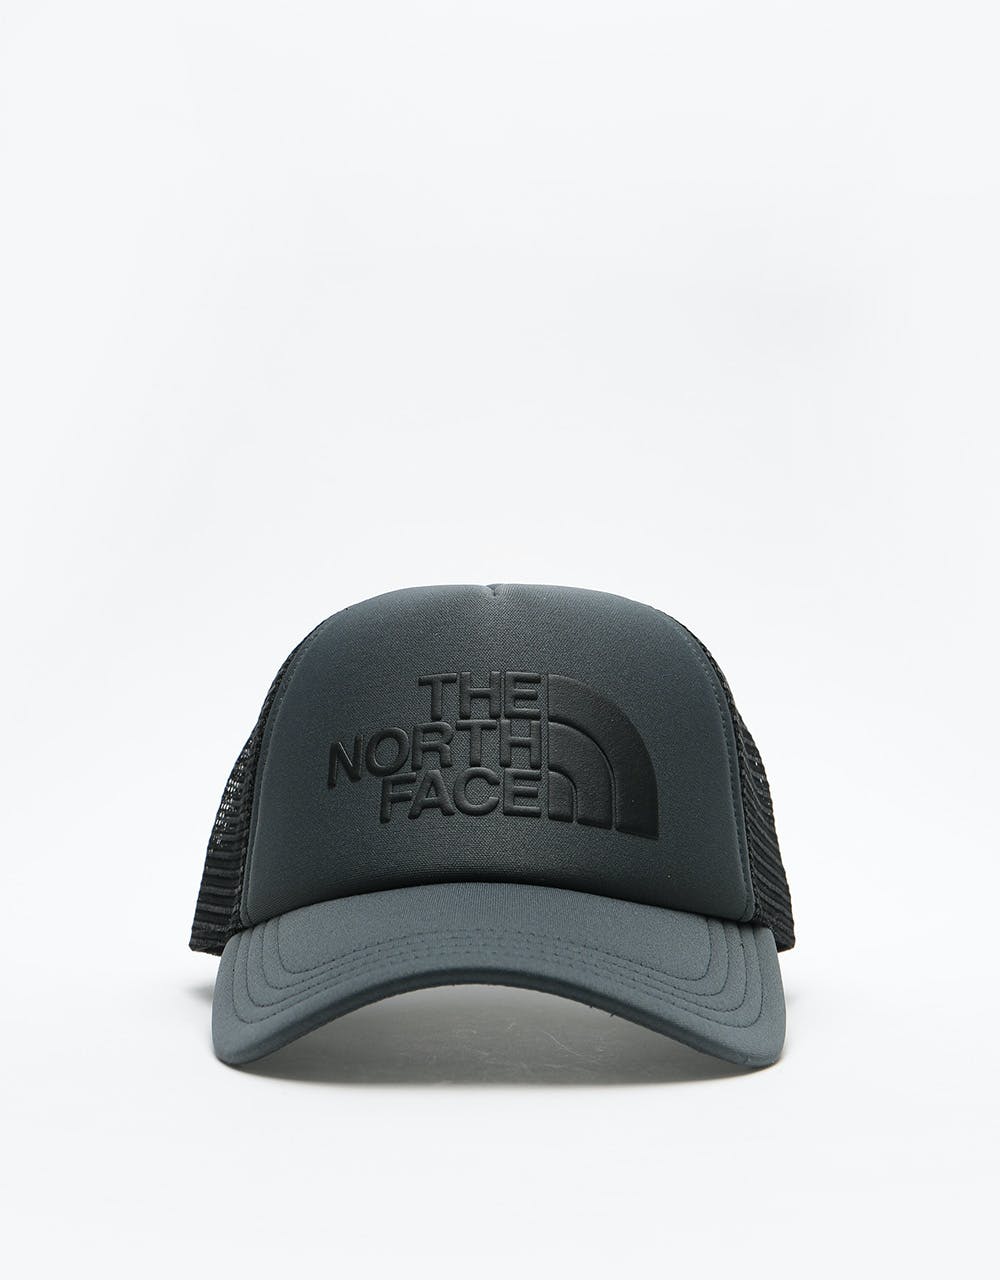 The North Face TNF Logo Trucker Cap - Asphalt Grey/TNF Black